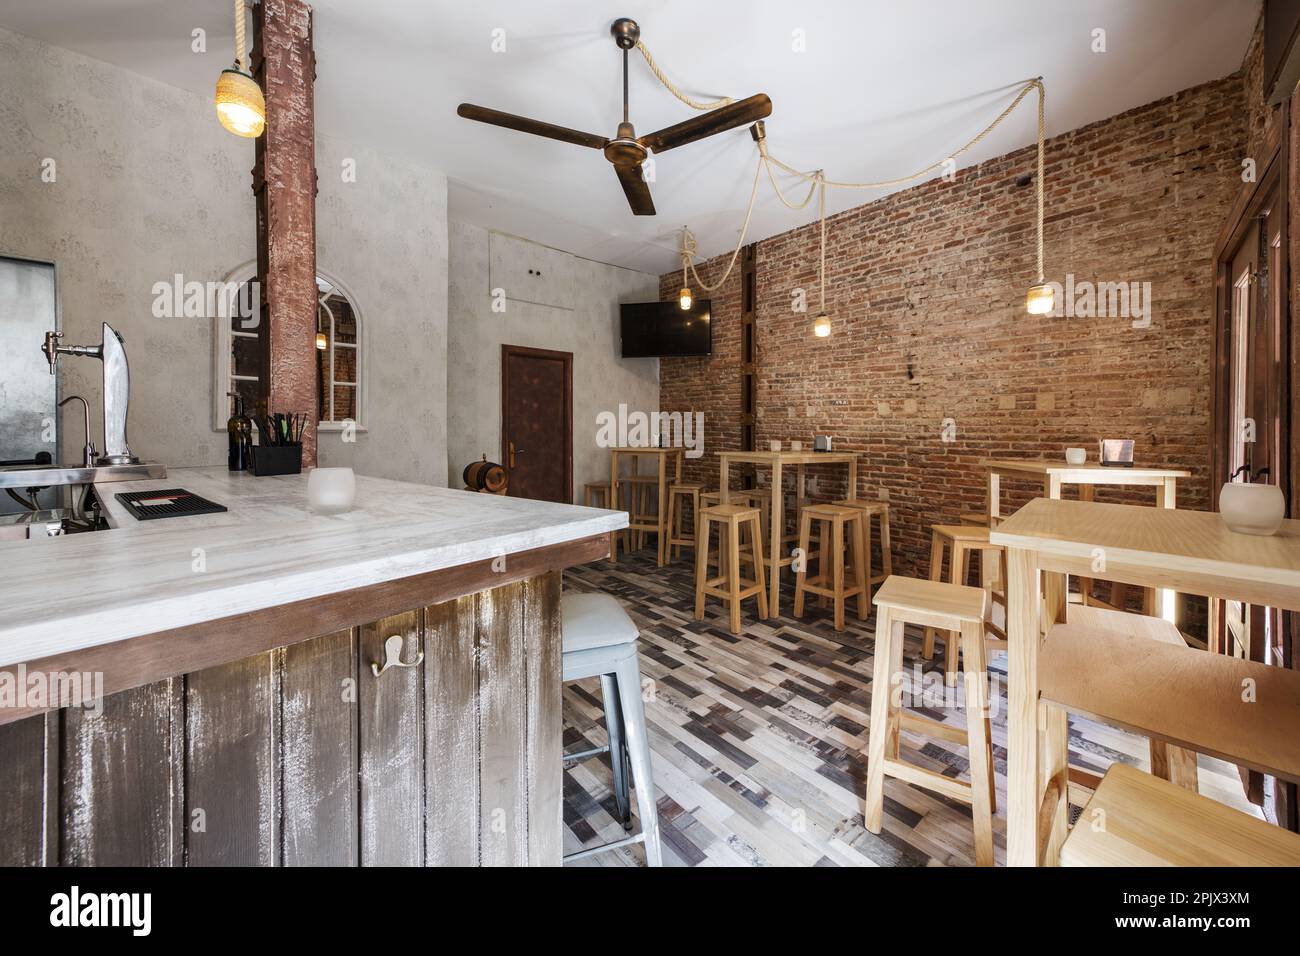 Un bar vide avec un comptoir en bois blanc, un ventilateur de plafond, des murs en briques brutes et de grandes tables en bois blanc avec des tabourets assortis, un plancher en mosaïque de bois et Banque D'Images